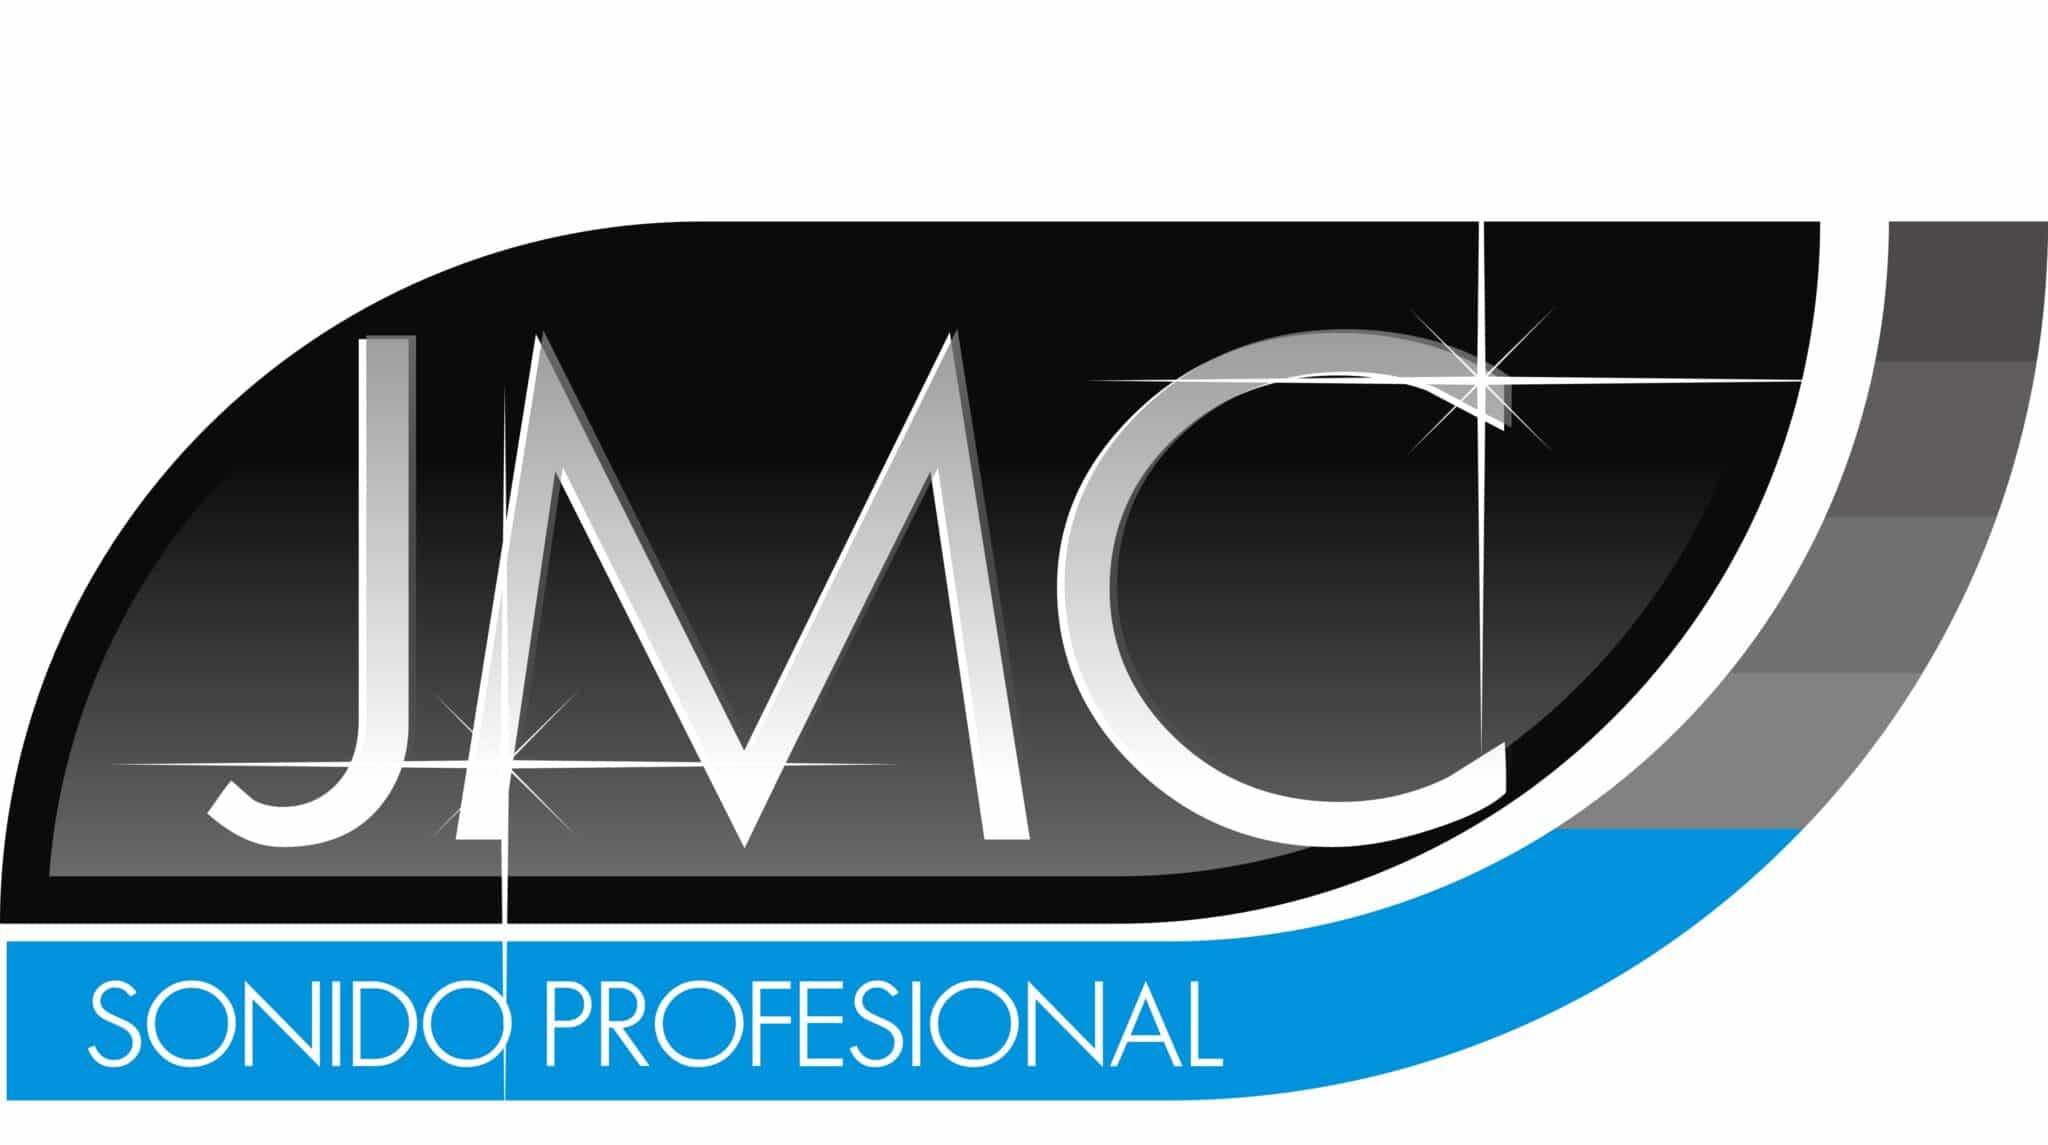 JMC SONIDO PROFESIONAL logo